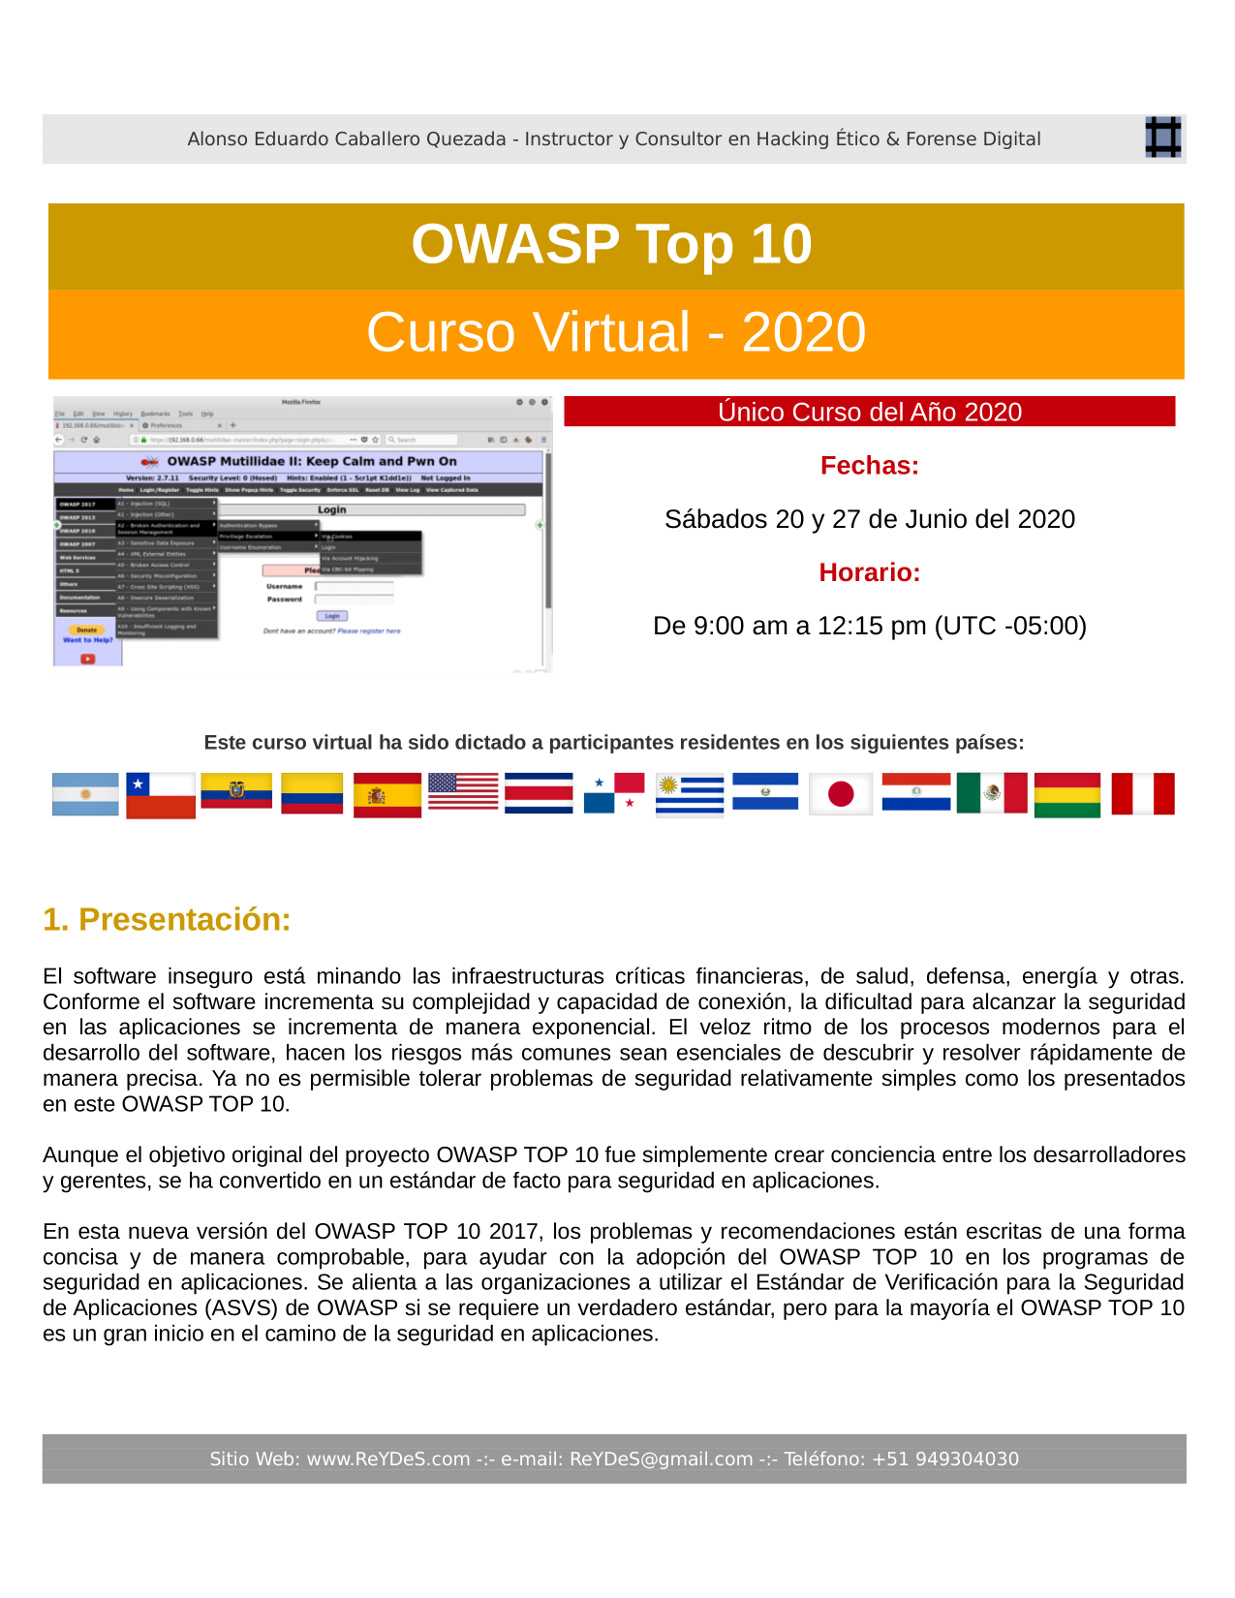 Único Curso Virtual de OWASP Top 10 2020